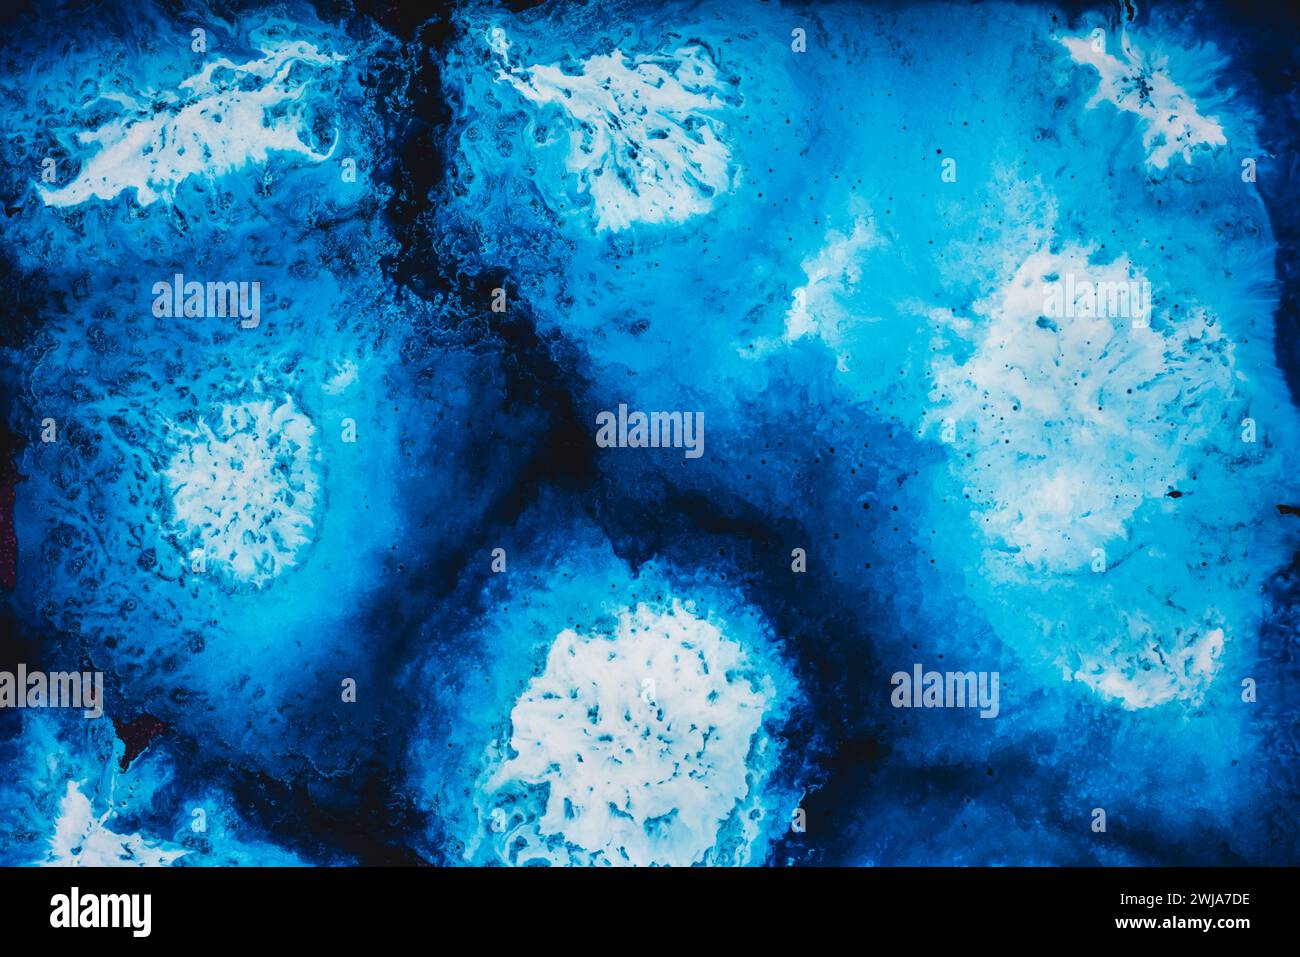 Un'immagine astratta simile a vorticosi motivi d'acqua in sfumature di blu e bianco, perfetta per temi legati all'oceano o agli elementi acquatici Foto Stock